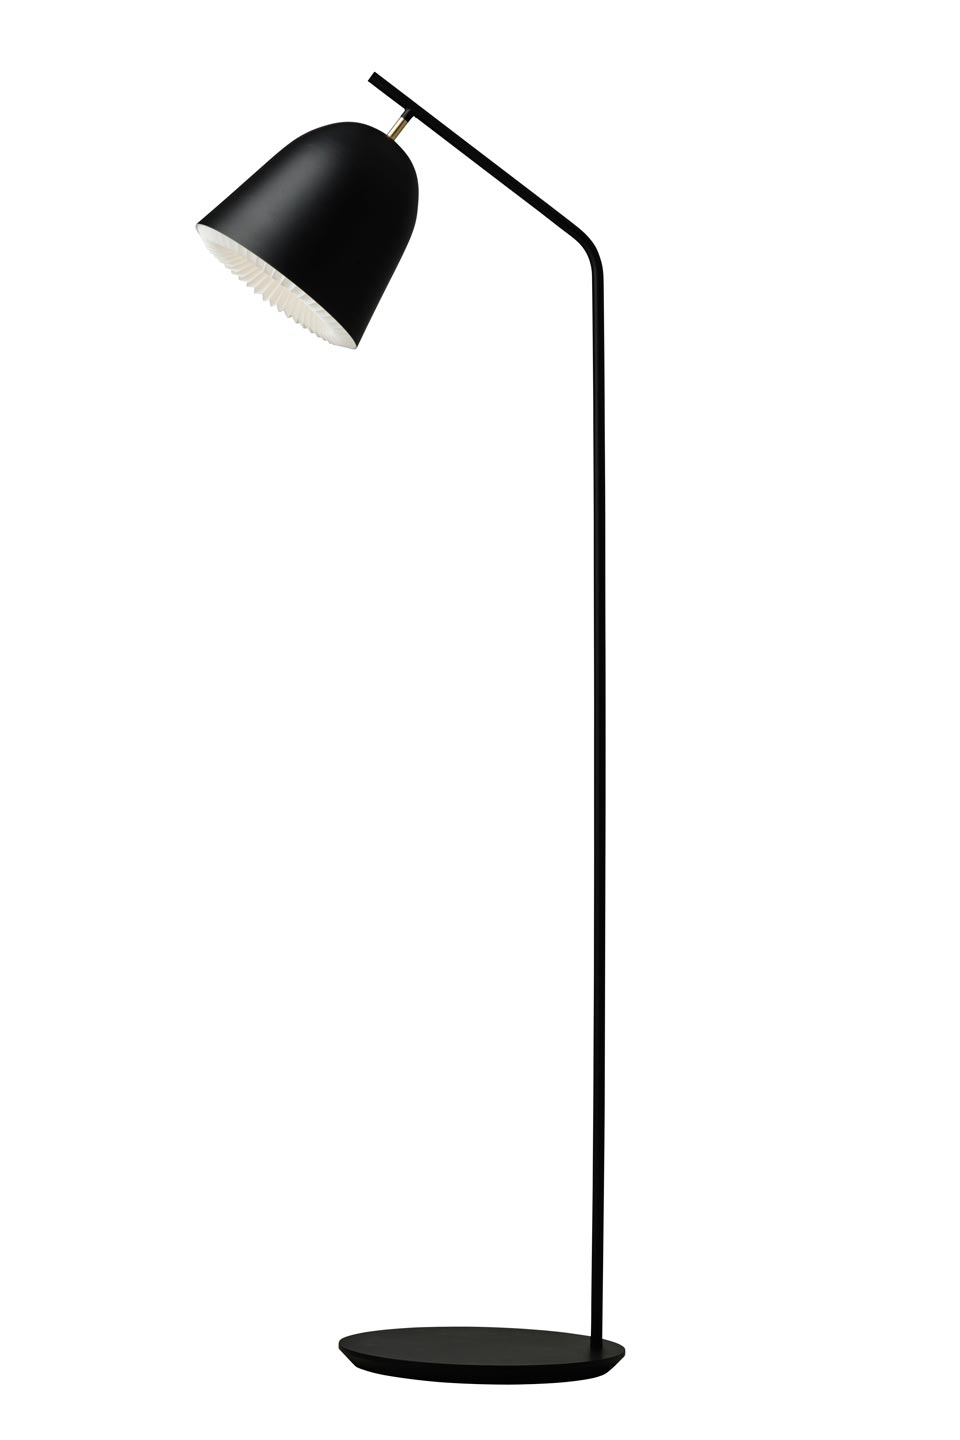 Cache lampadaire en cloche noire: Le Klint, design scandinave, papier plié  - Réf. 20090140 - mobile